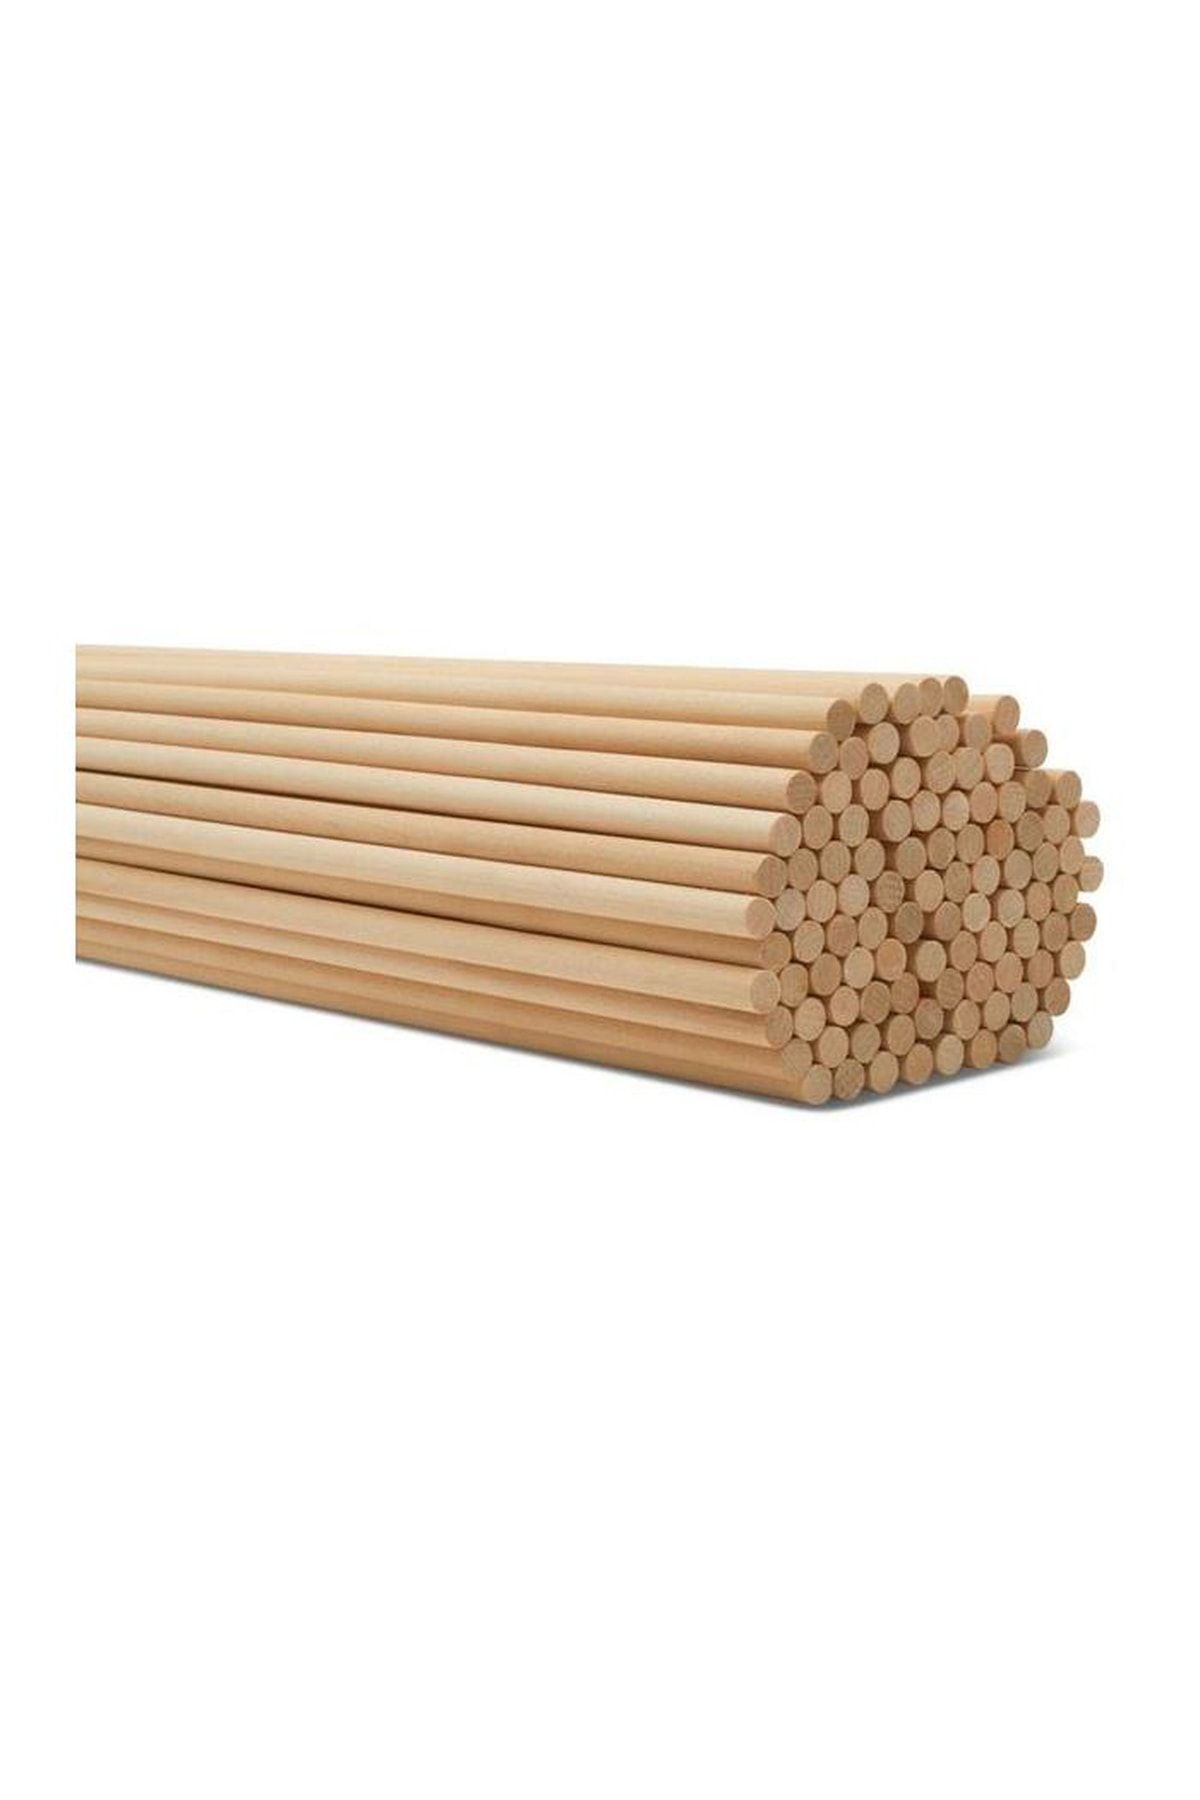 ncy Bambu Yuvarlak Ahşap Maket Çubukları 35 Cm 80 Adet 5 Mm